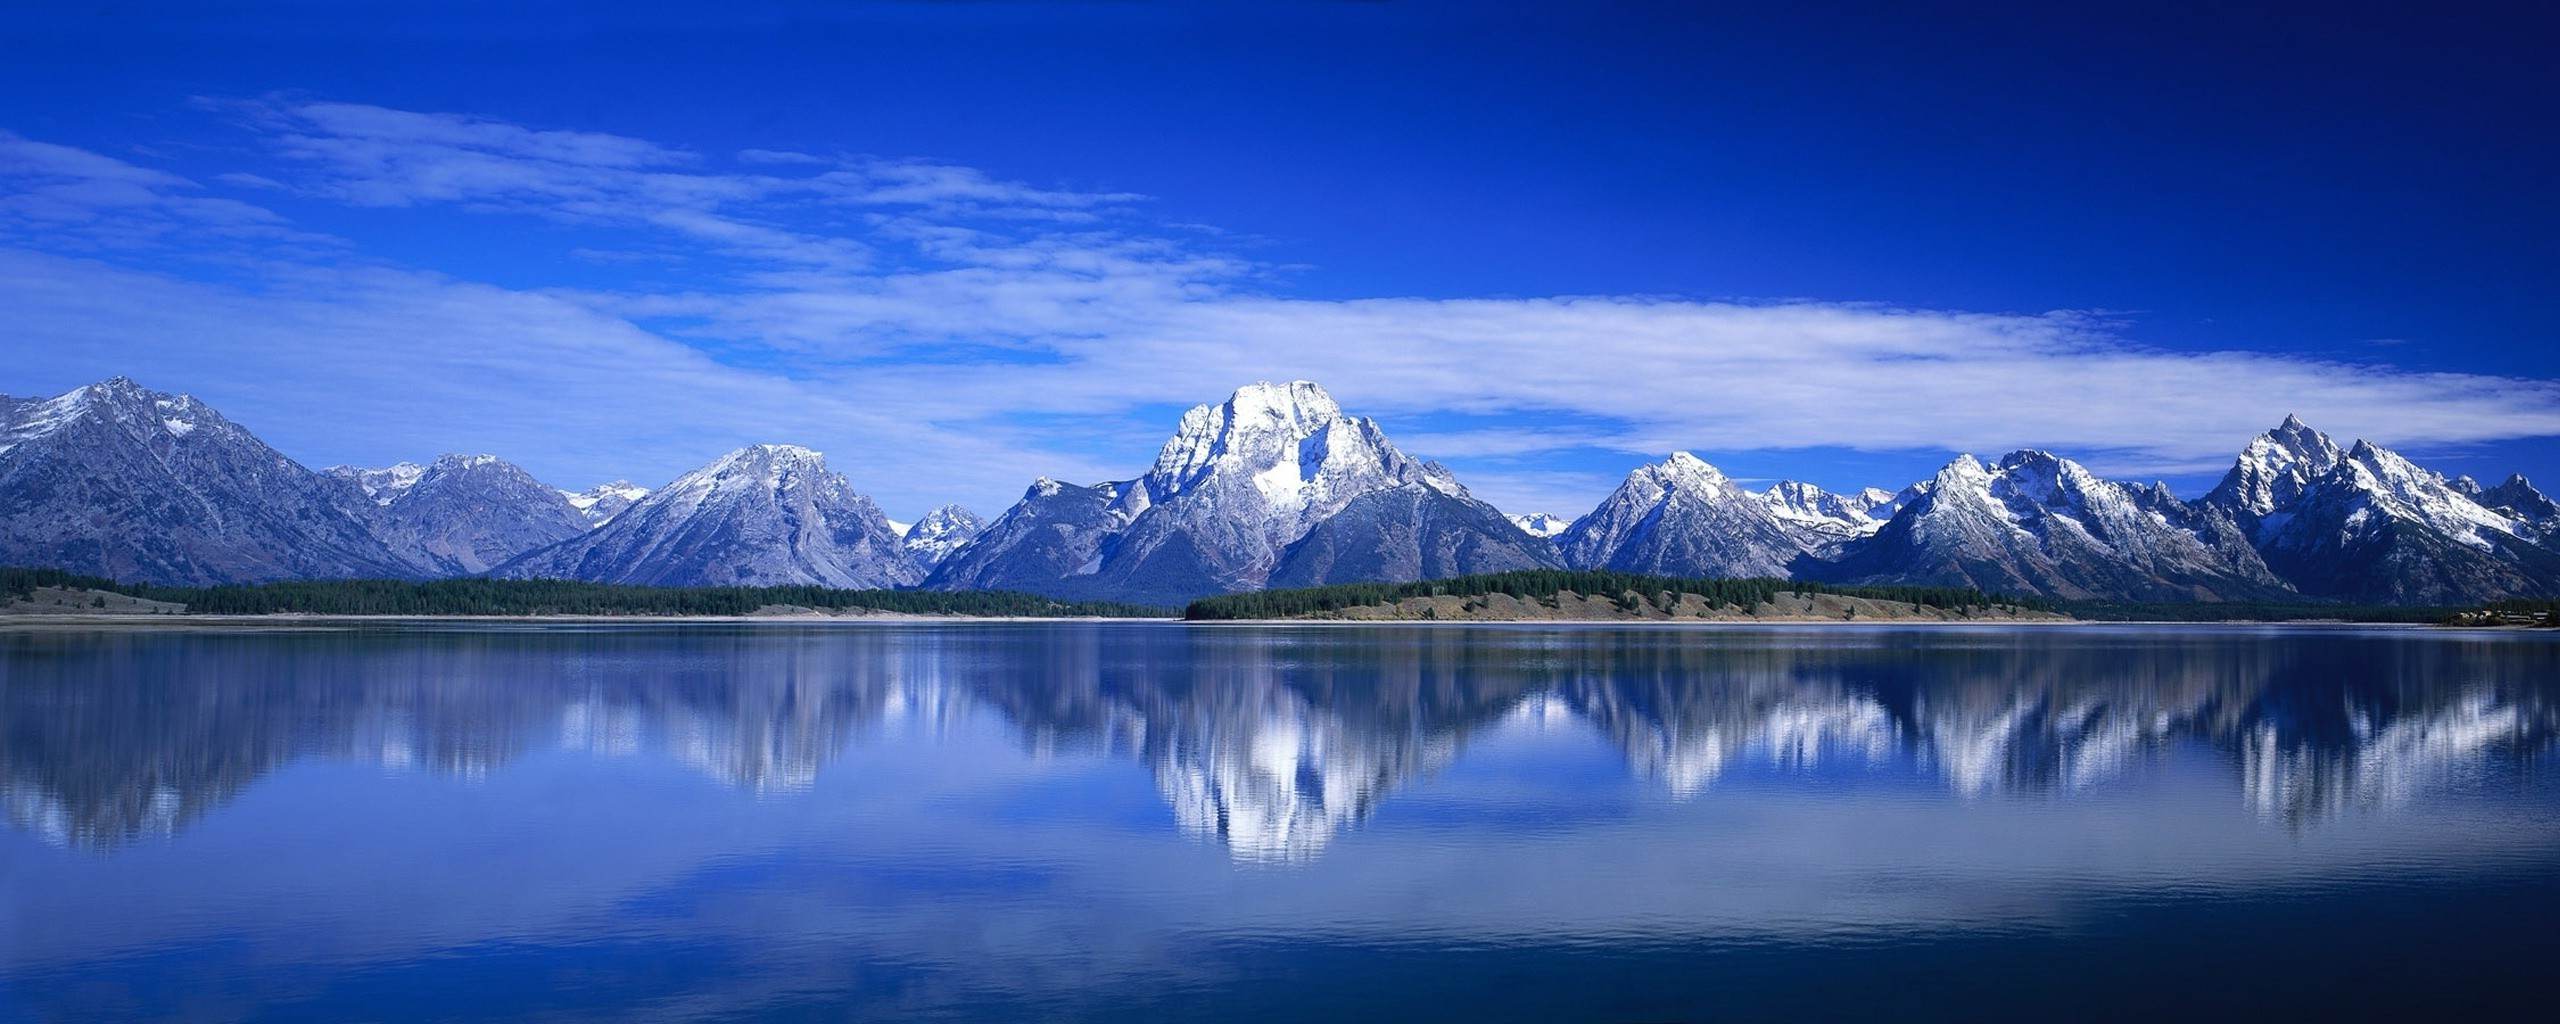 自然雪山背景 镜像湖 晴空万里